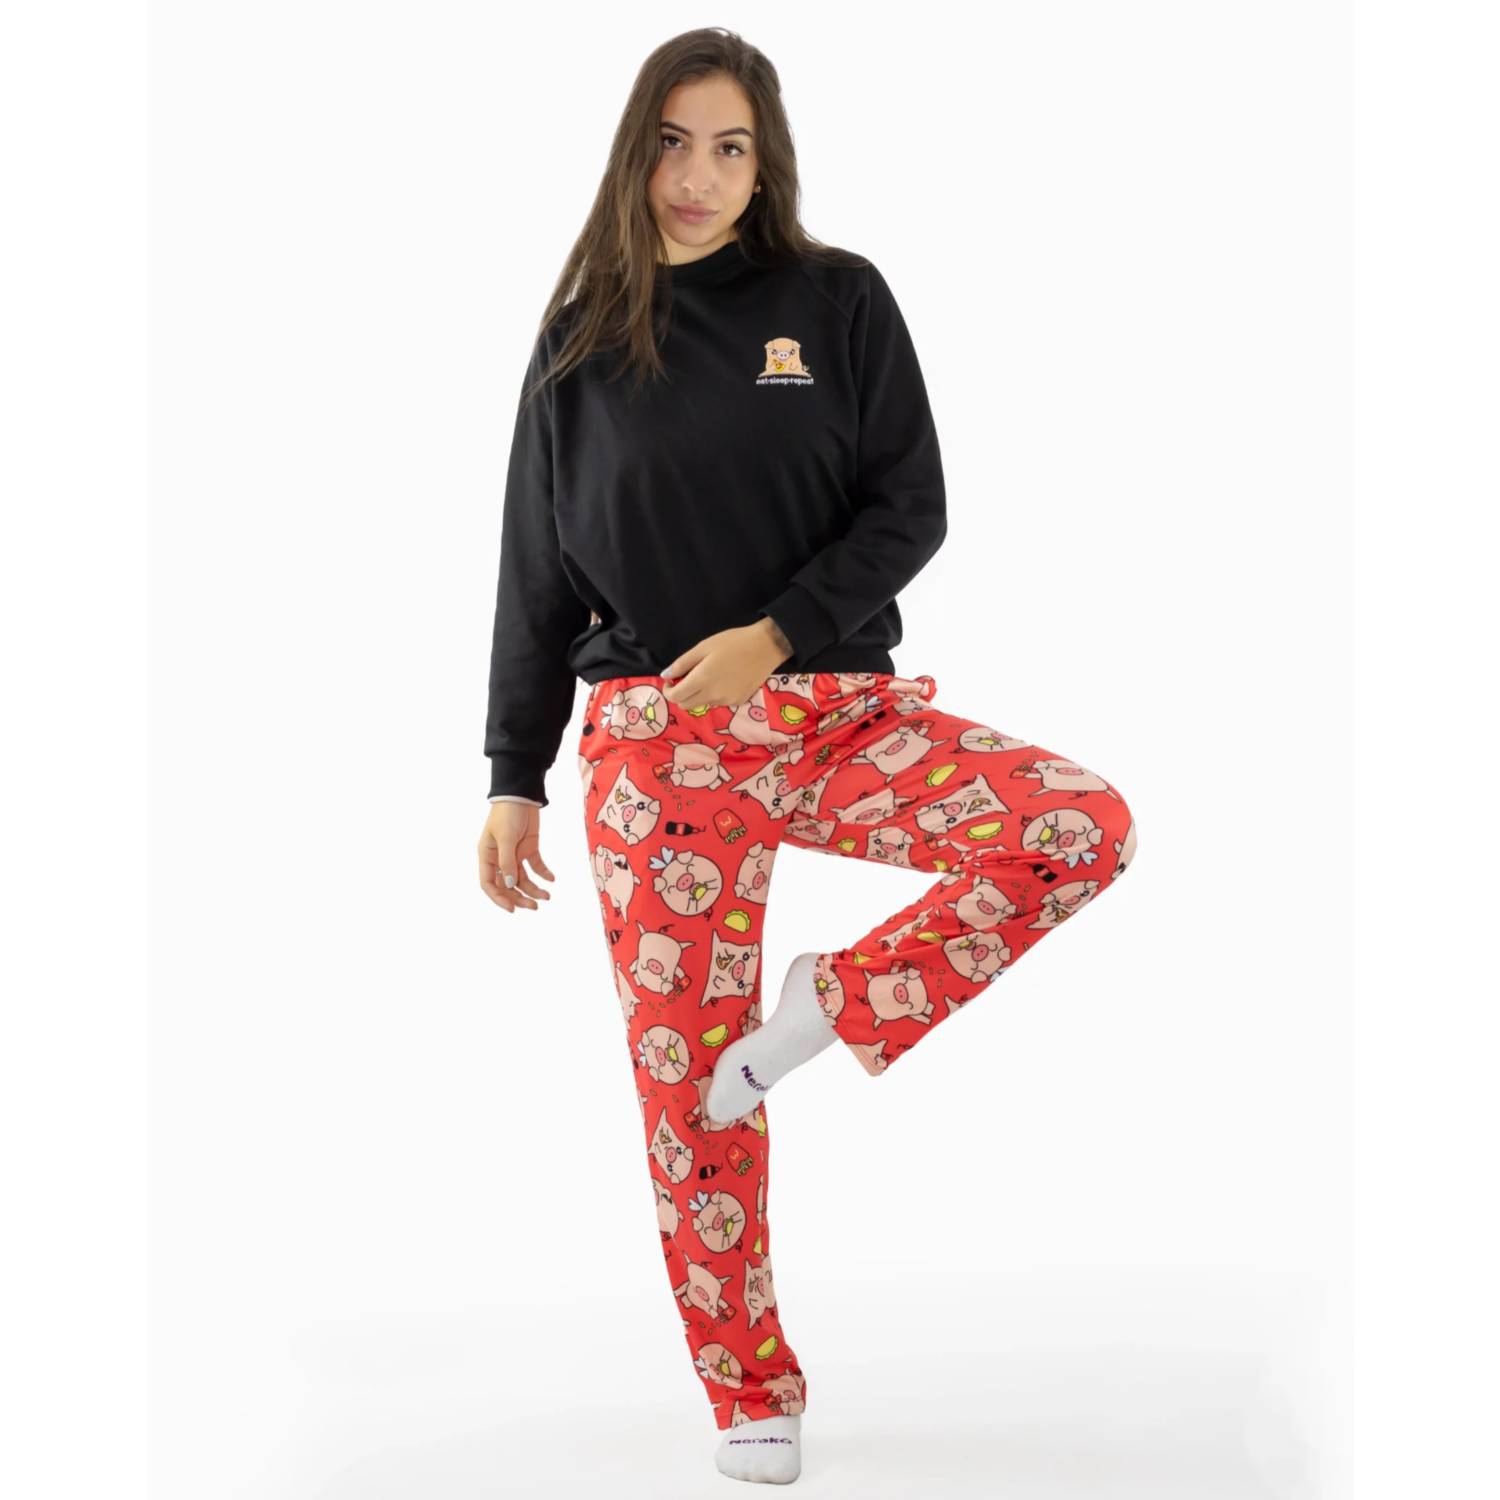 Conjunto Pijama pantalón piel de durazno Mujer - Cerditos NERAKO